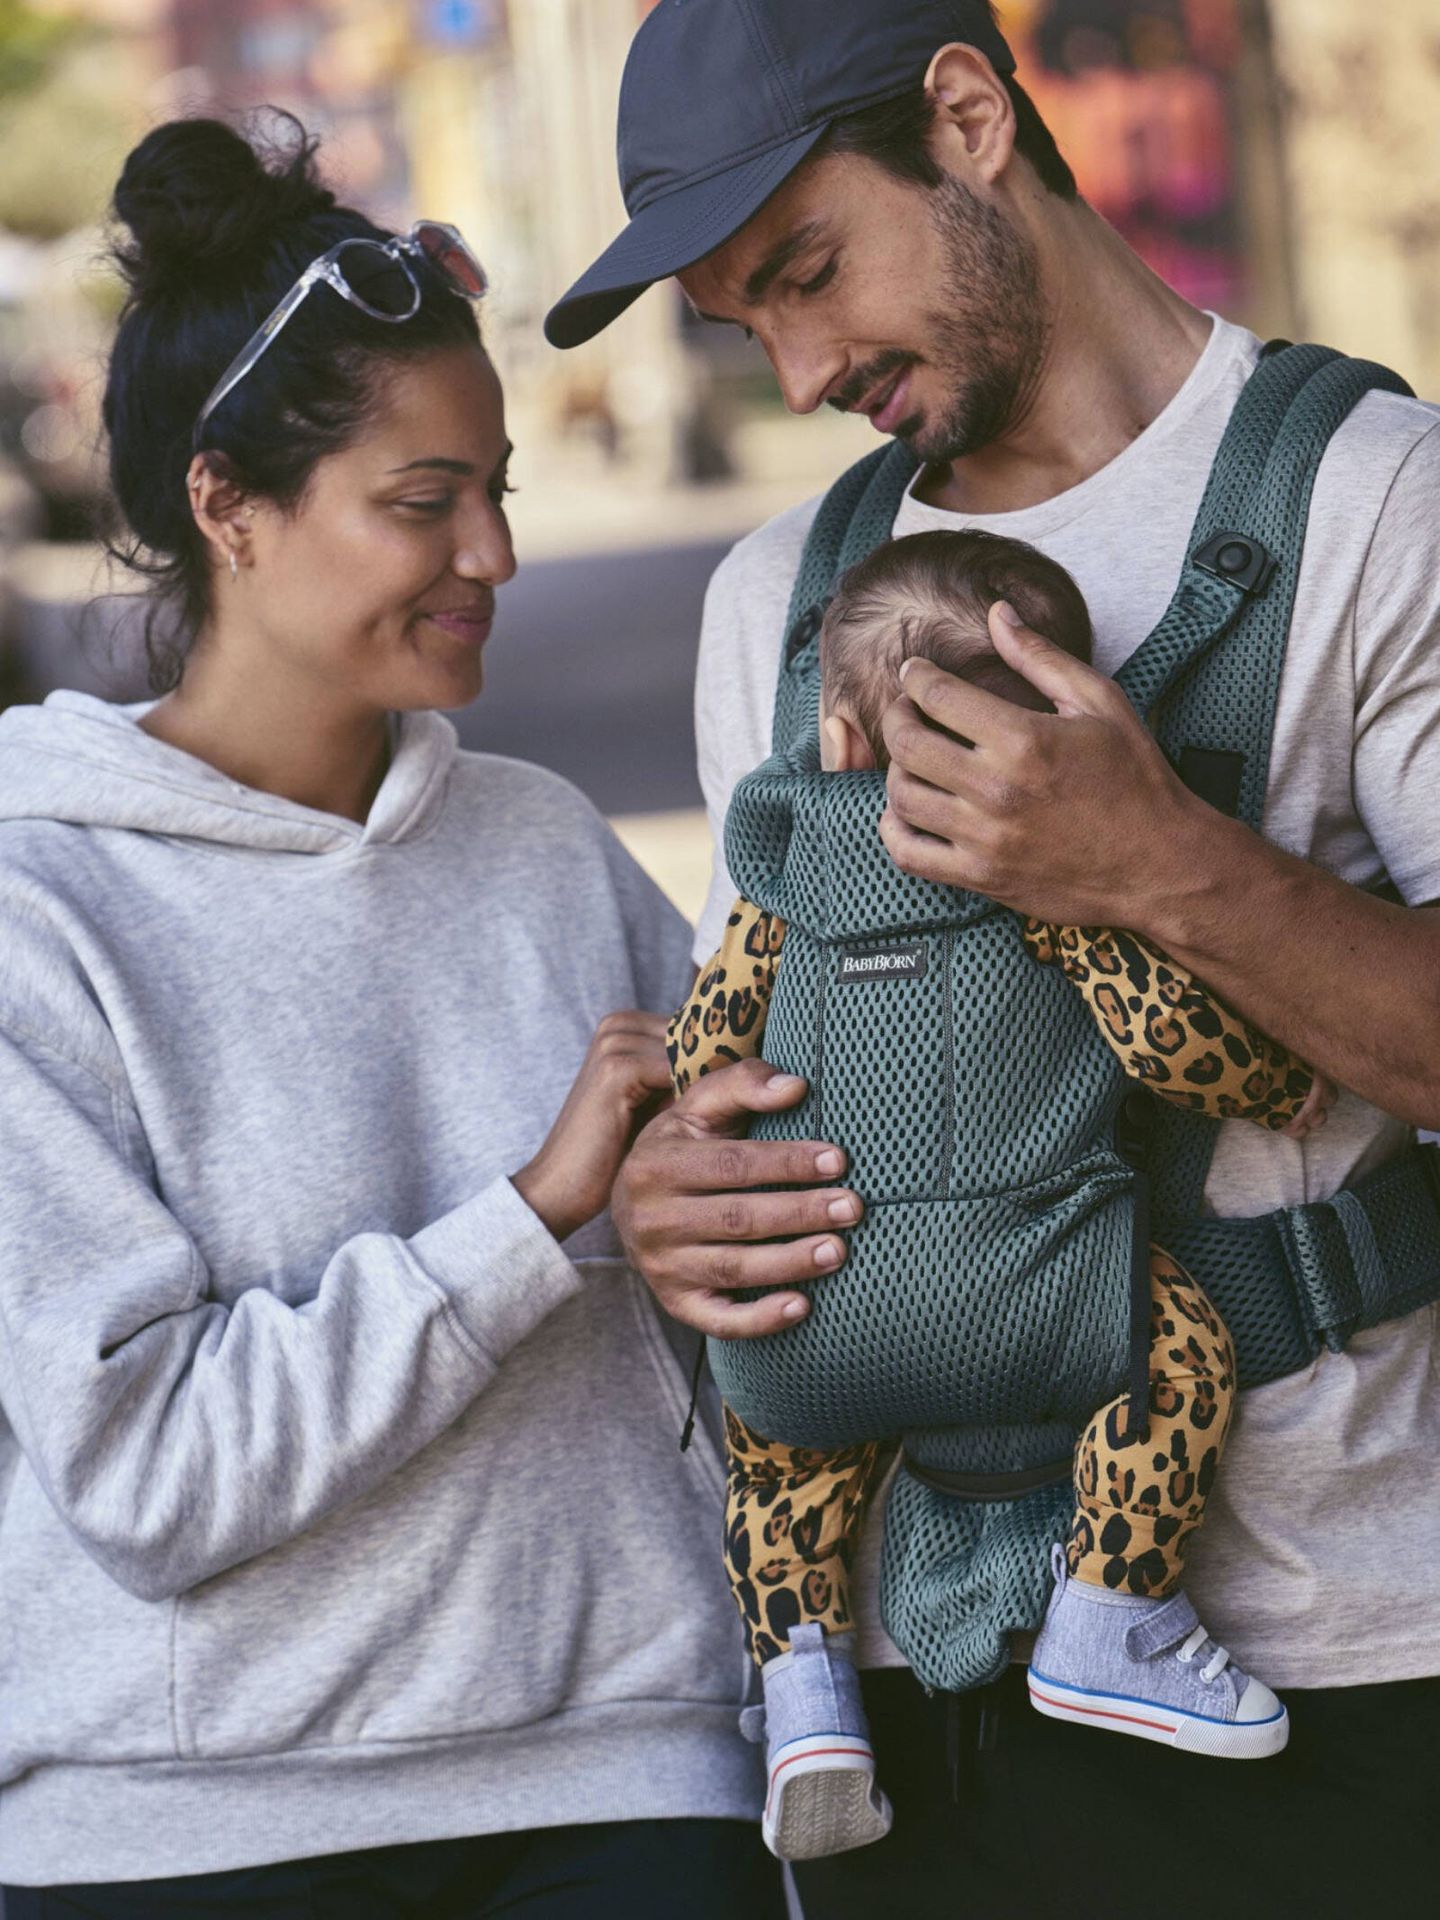 El porteo es un método seguro para llevar al bebé, si se hace bien. (Cortesía/Babybjorn)